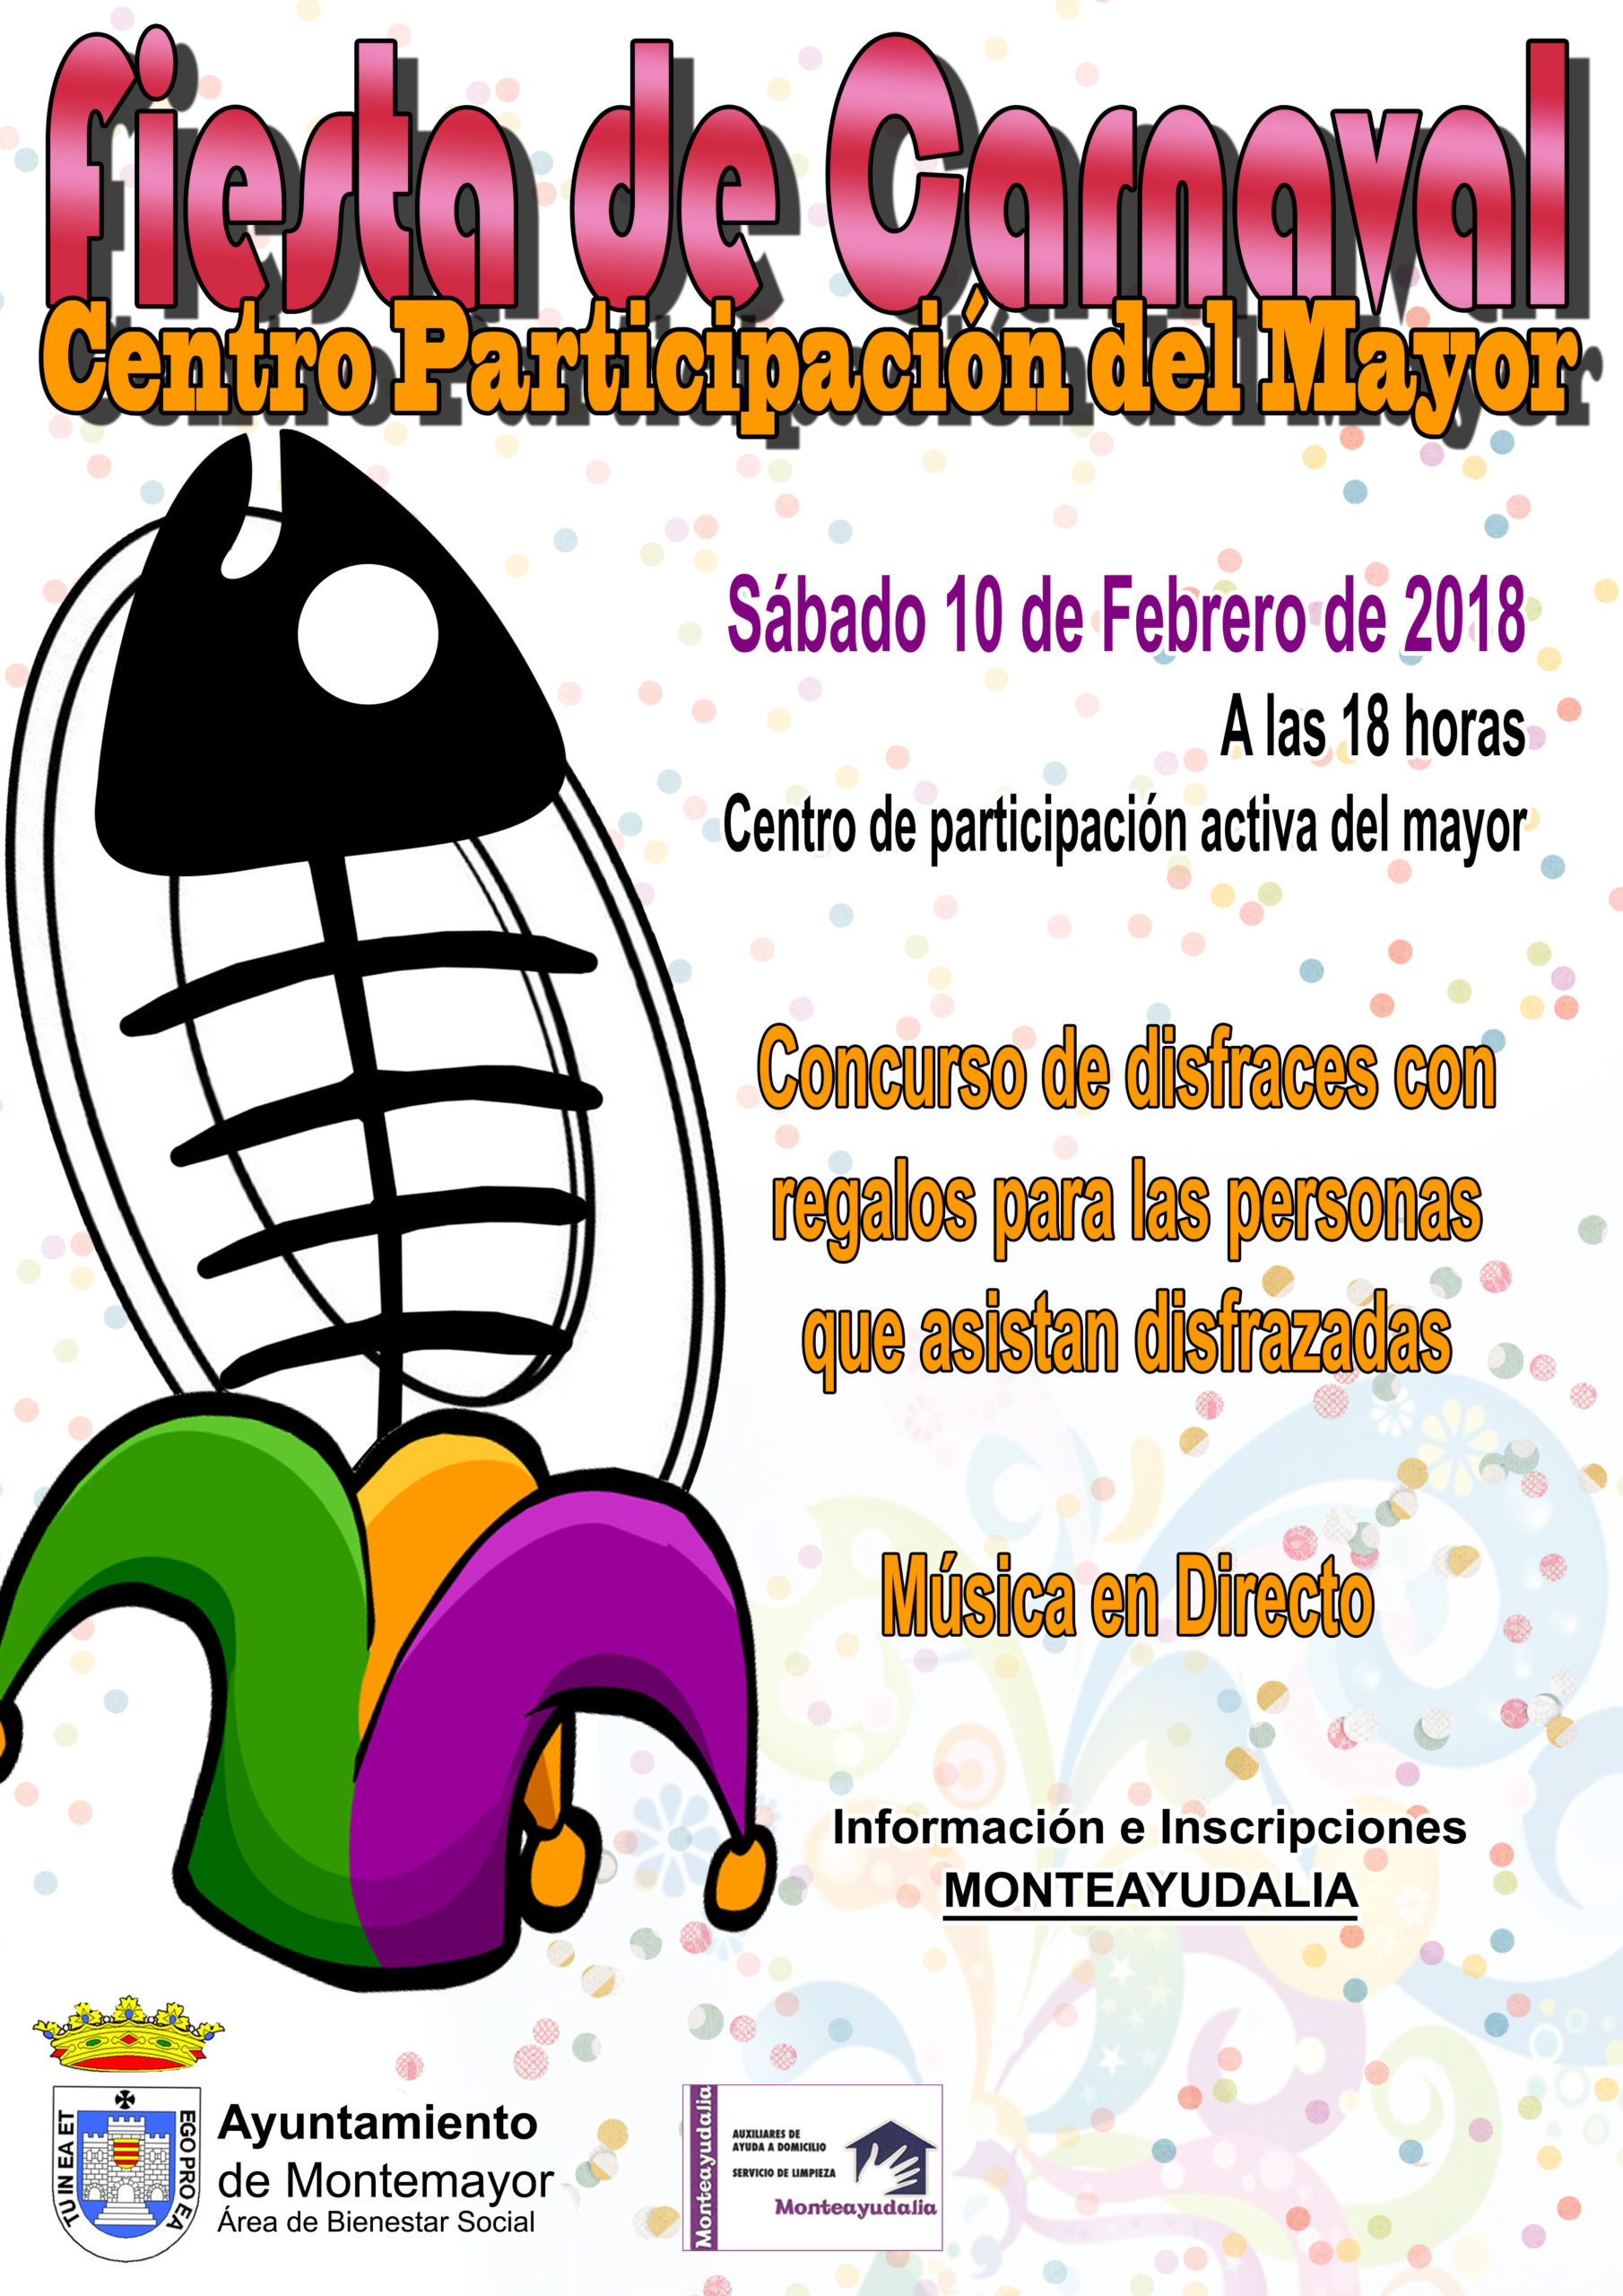 Fiesta de Carnaval Centro Participación del Mayor 1